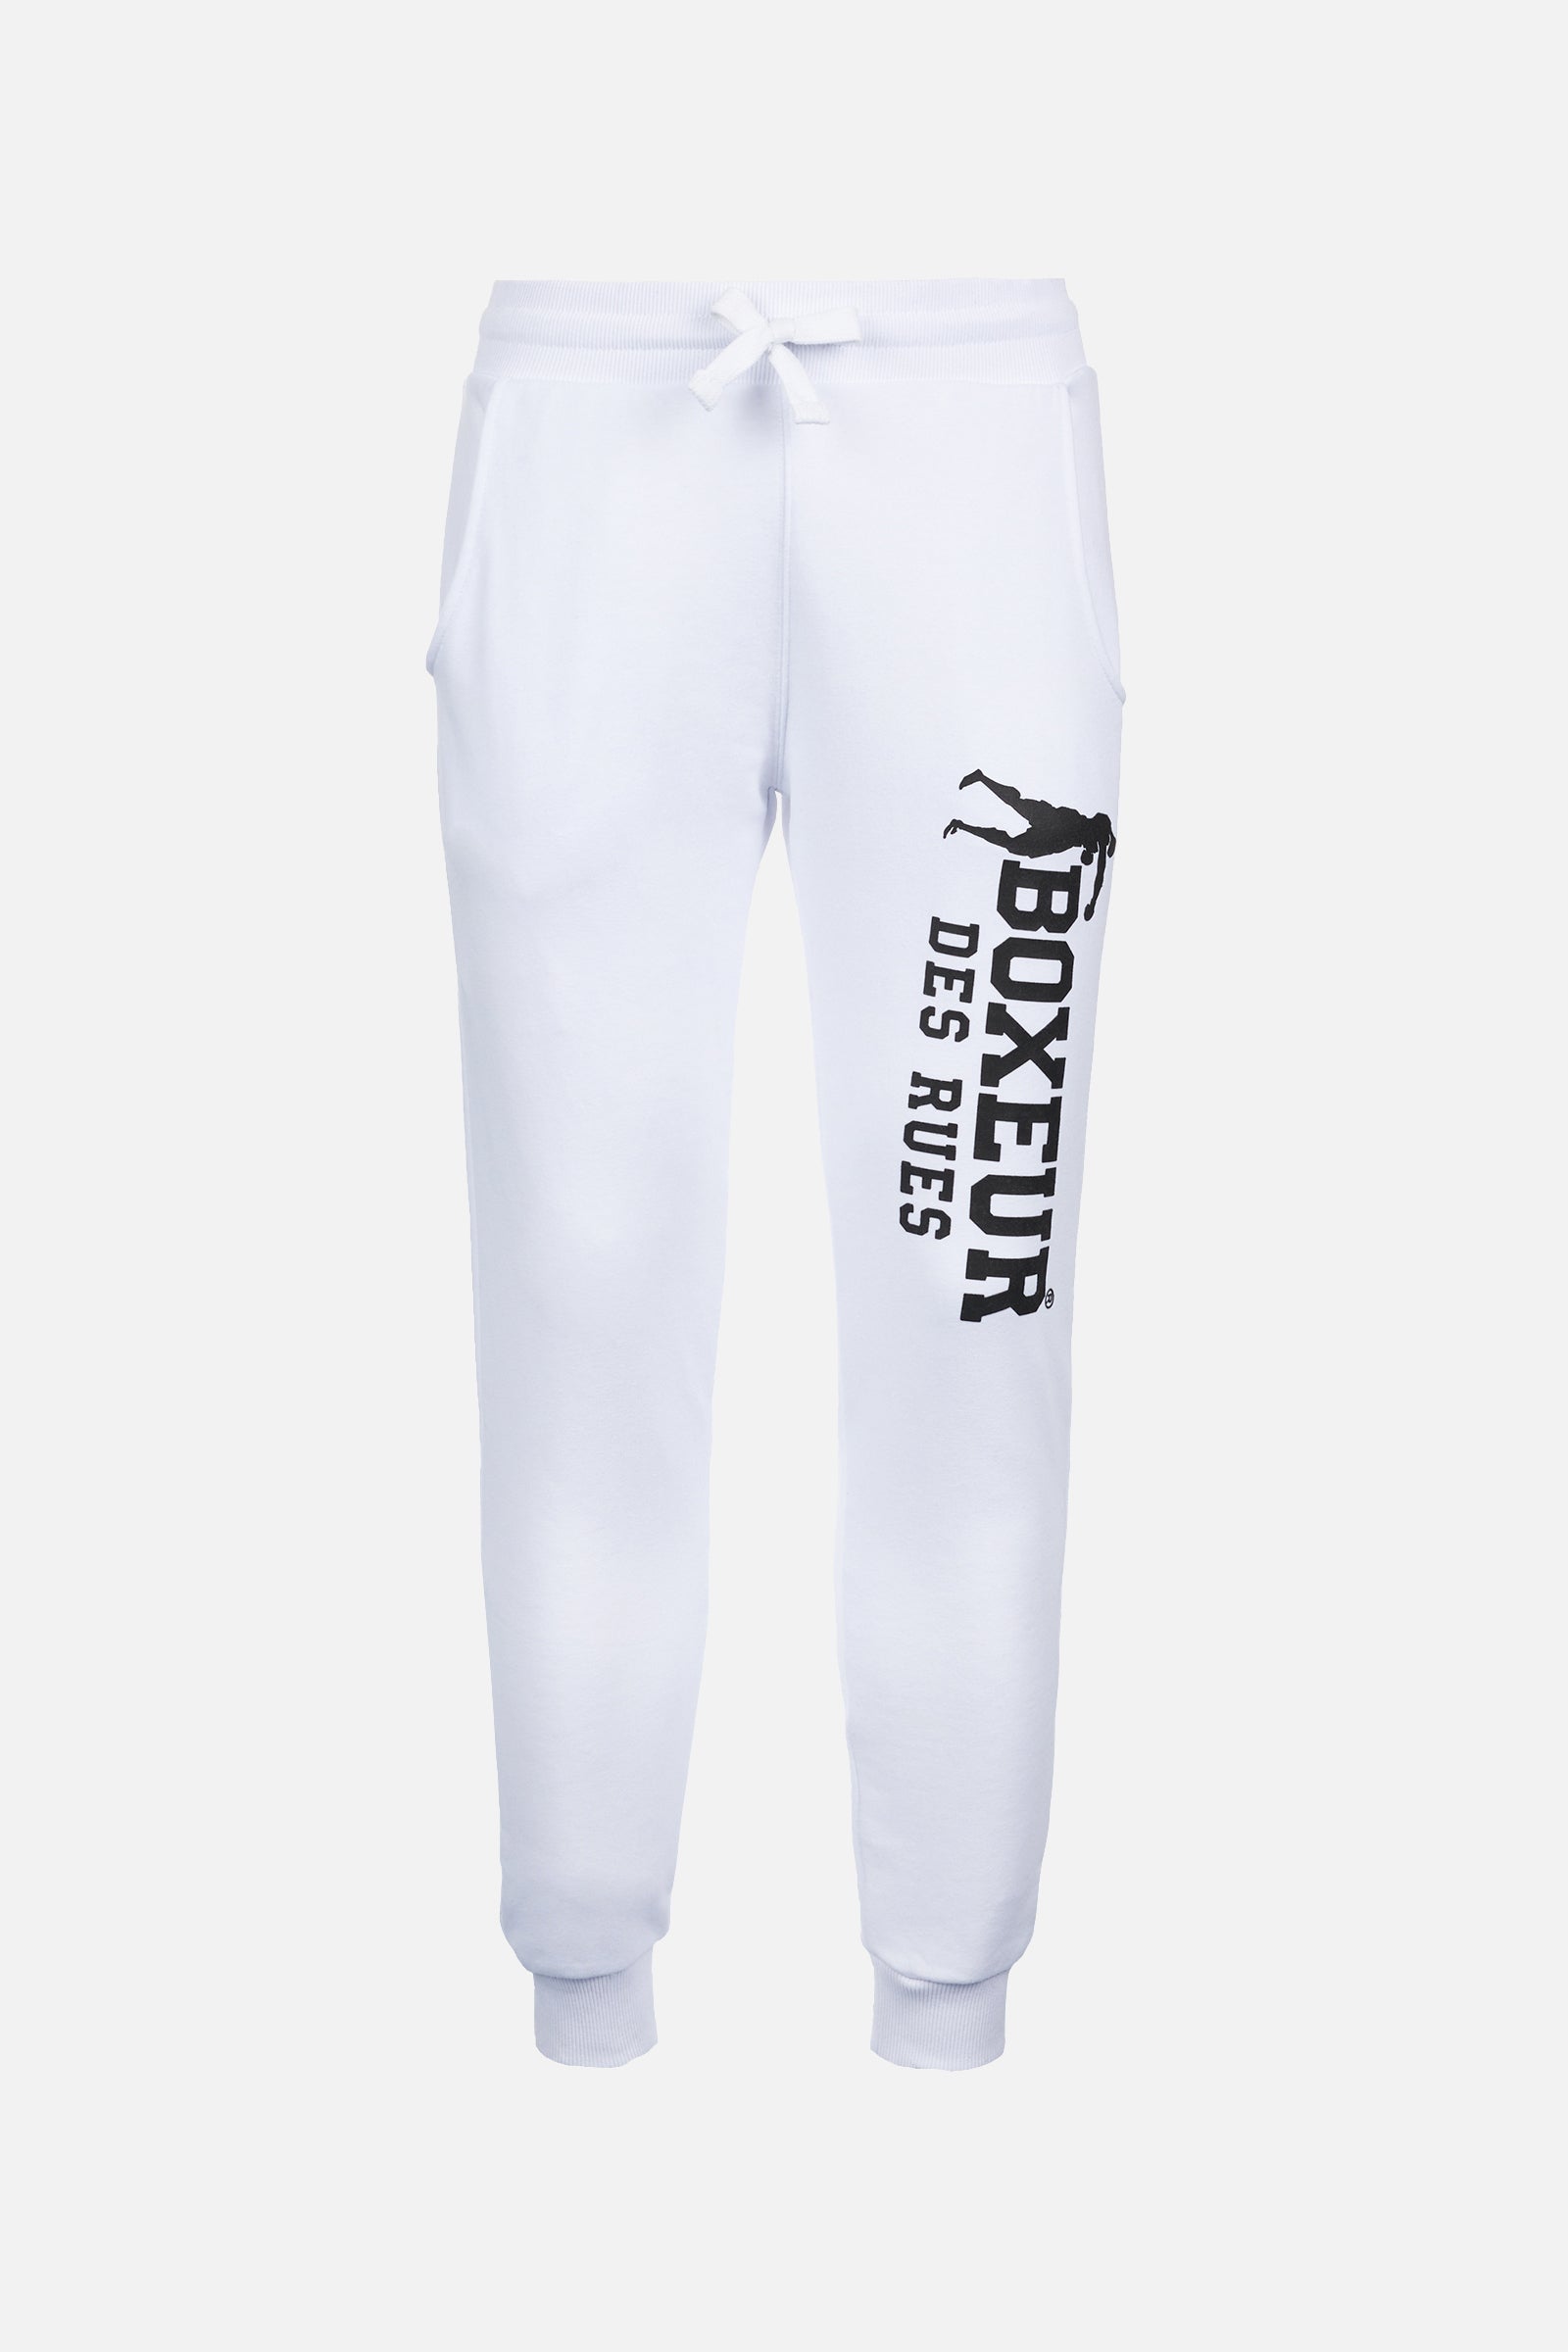 Slim Fit Sweatpant With Logo in White-Black Jogginghosen Boxeur des Rues   